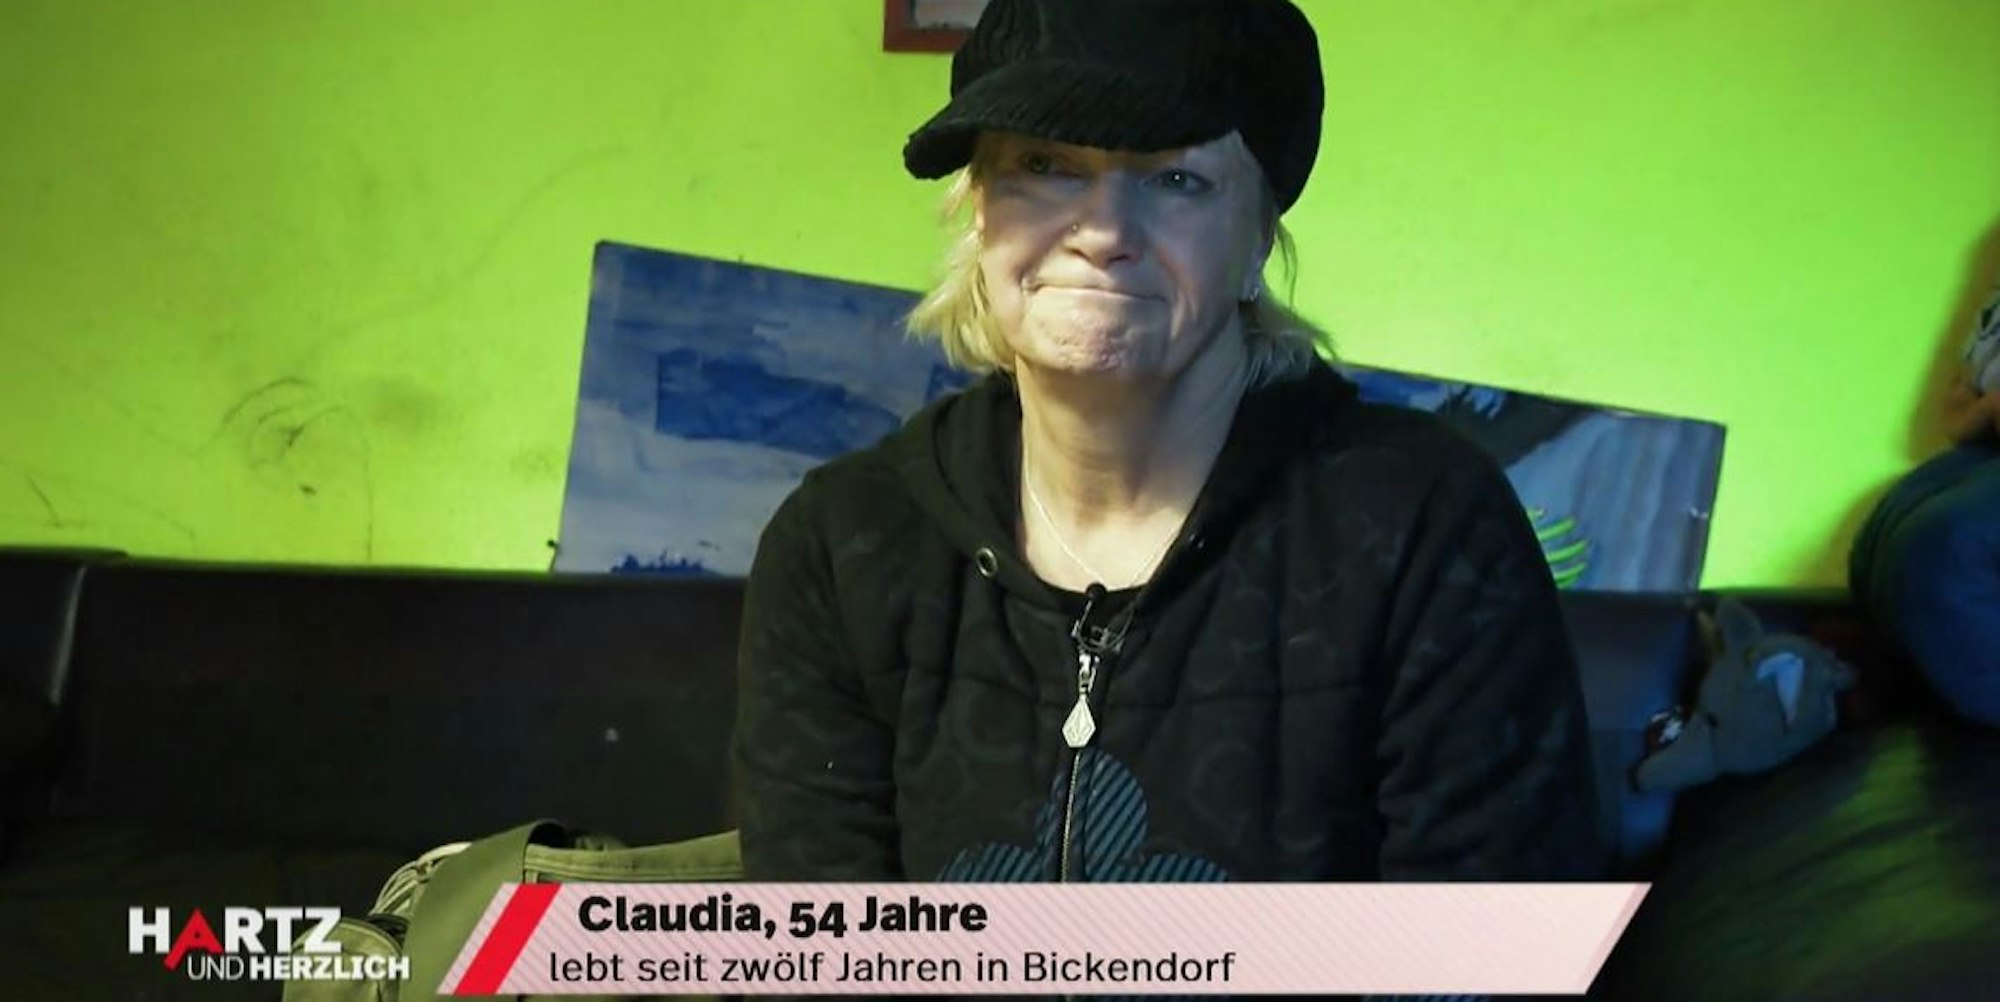 Claudia_Hartz und herzlich